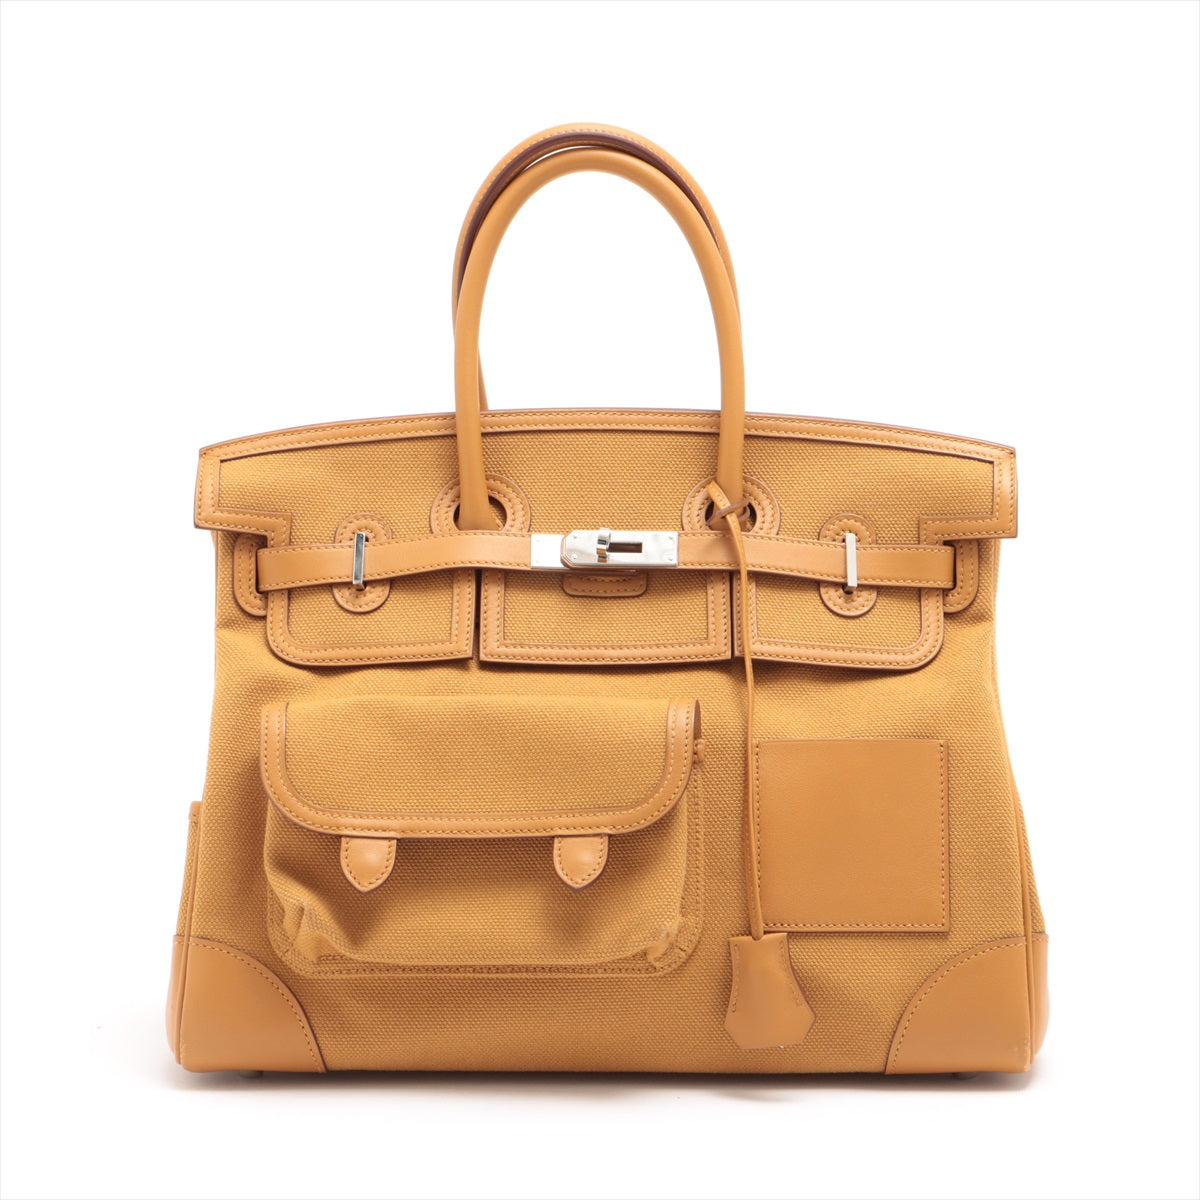 Hermes handbags from maisondesigners.com